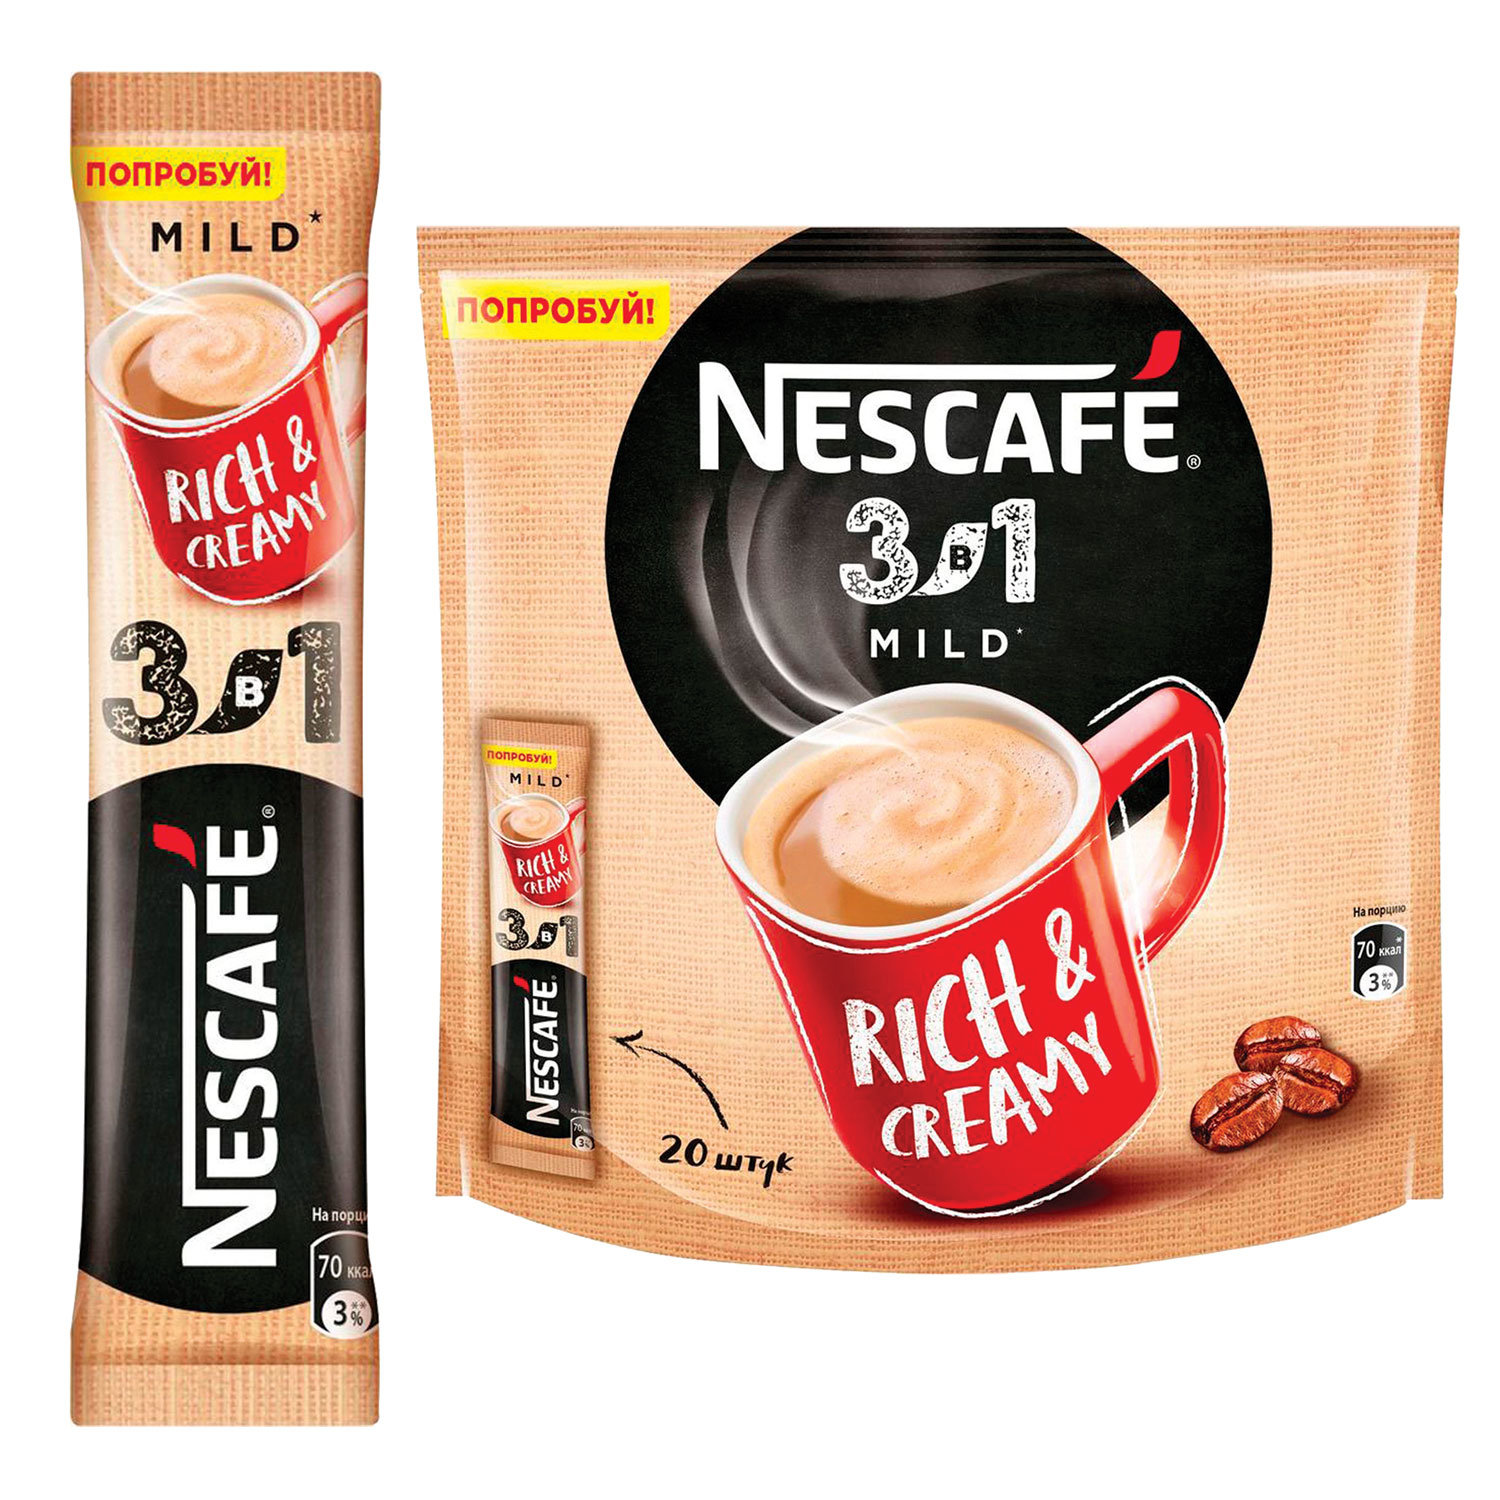 Кофе нескафе в пакетиках. Nescafe 3 в 1 mild. Нескафе 3 в 1 20 пакетиков. Растворимый кофе в пакетиках Нескафе 3 в 1. Кофе Нескафе в пакетиках 3 в 1.